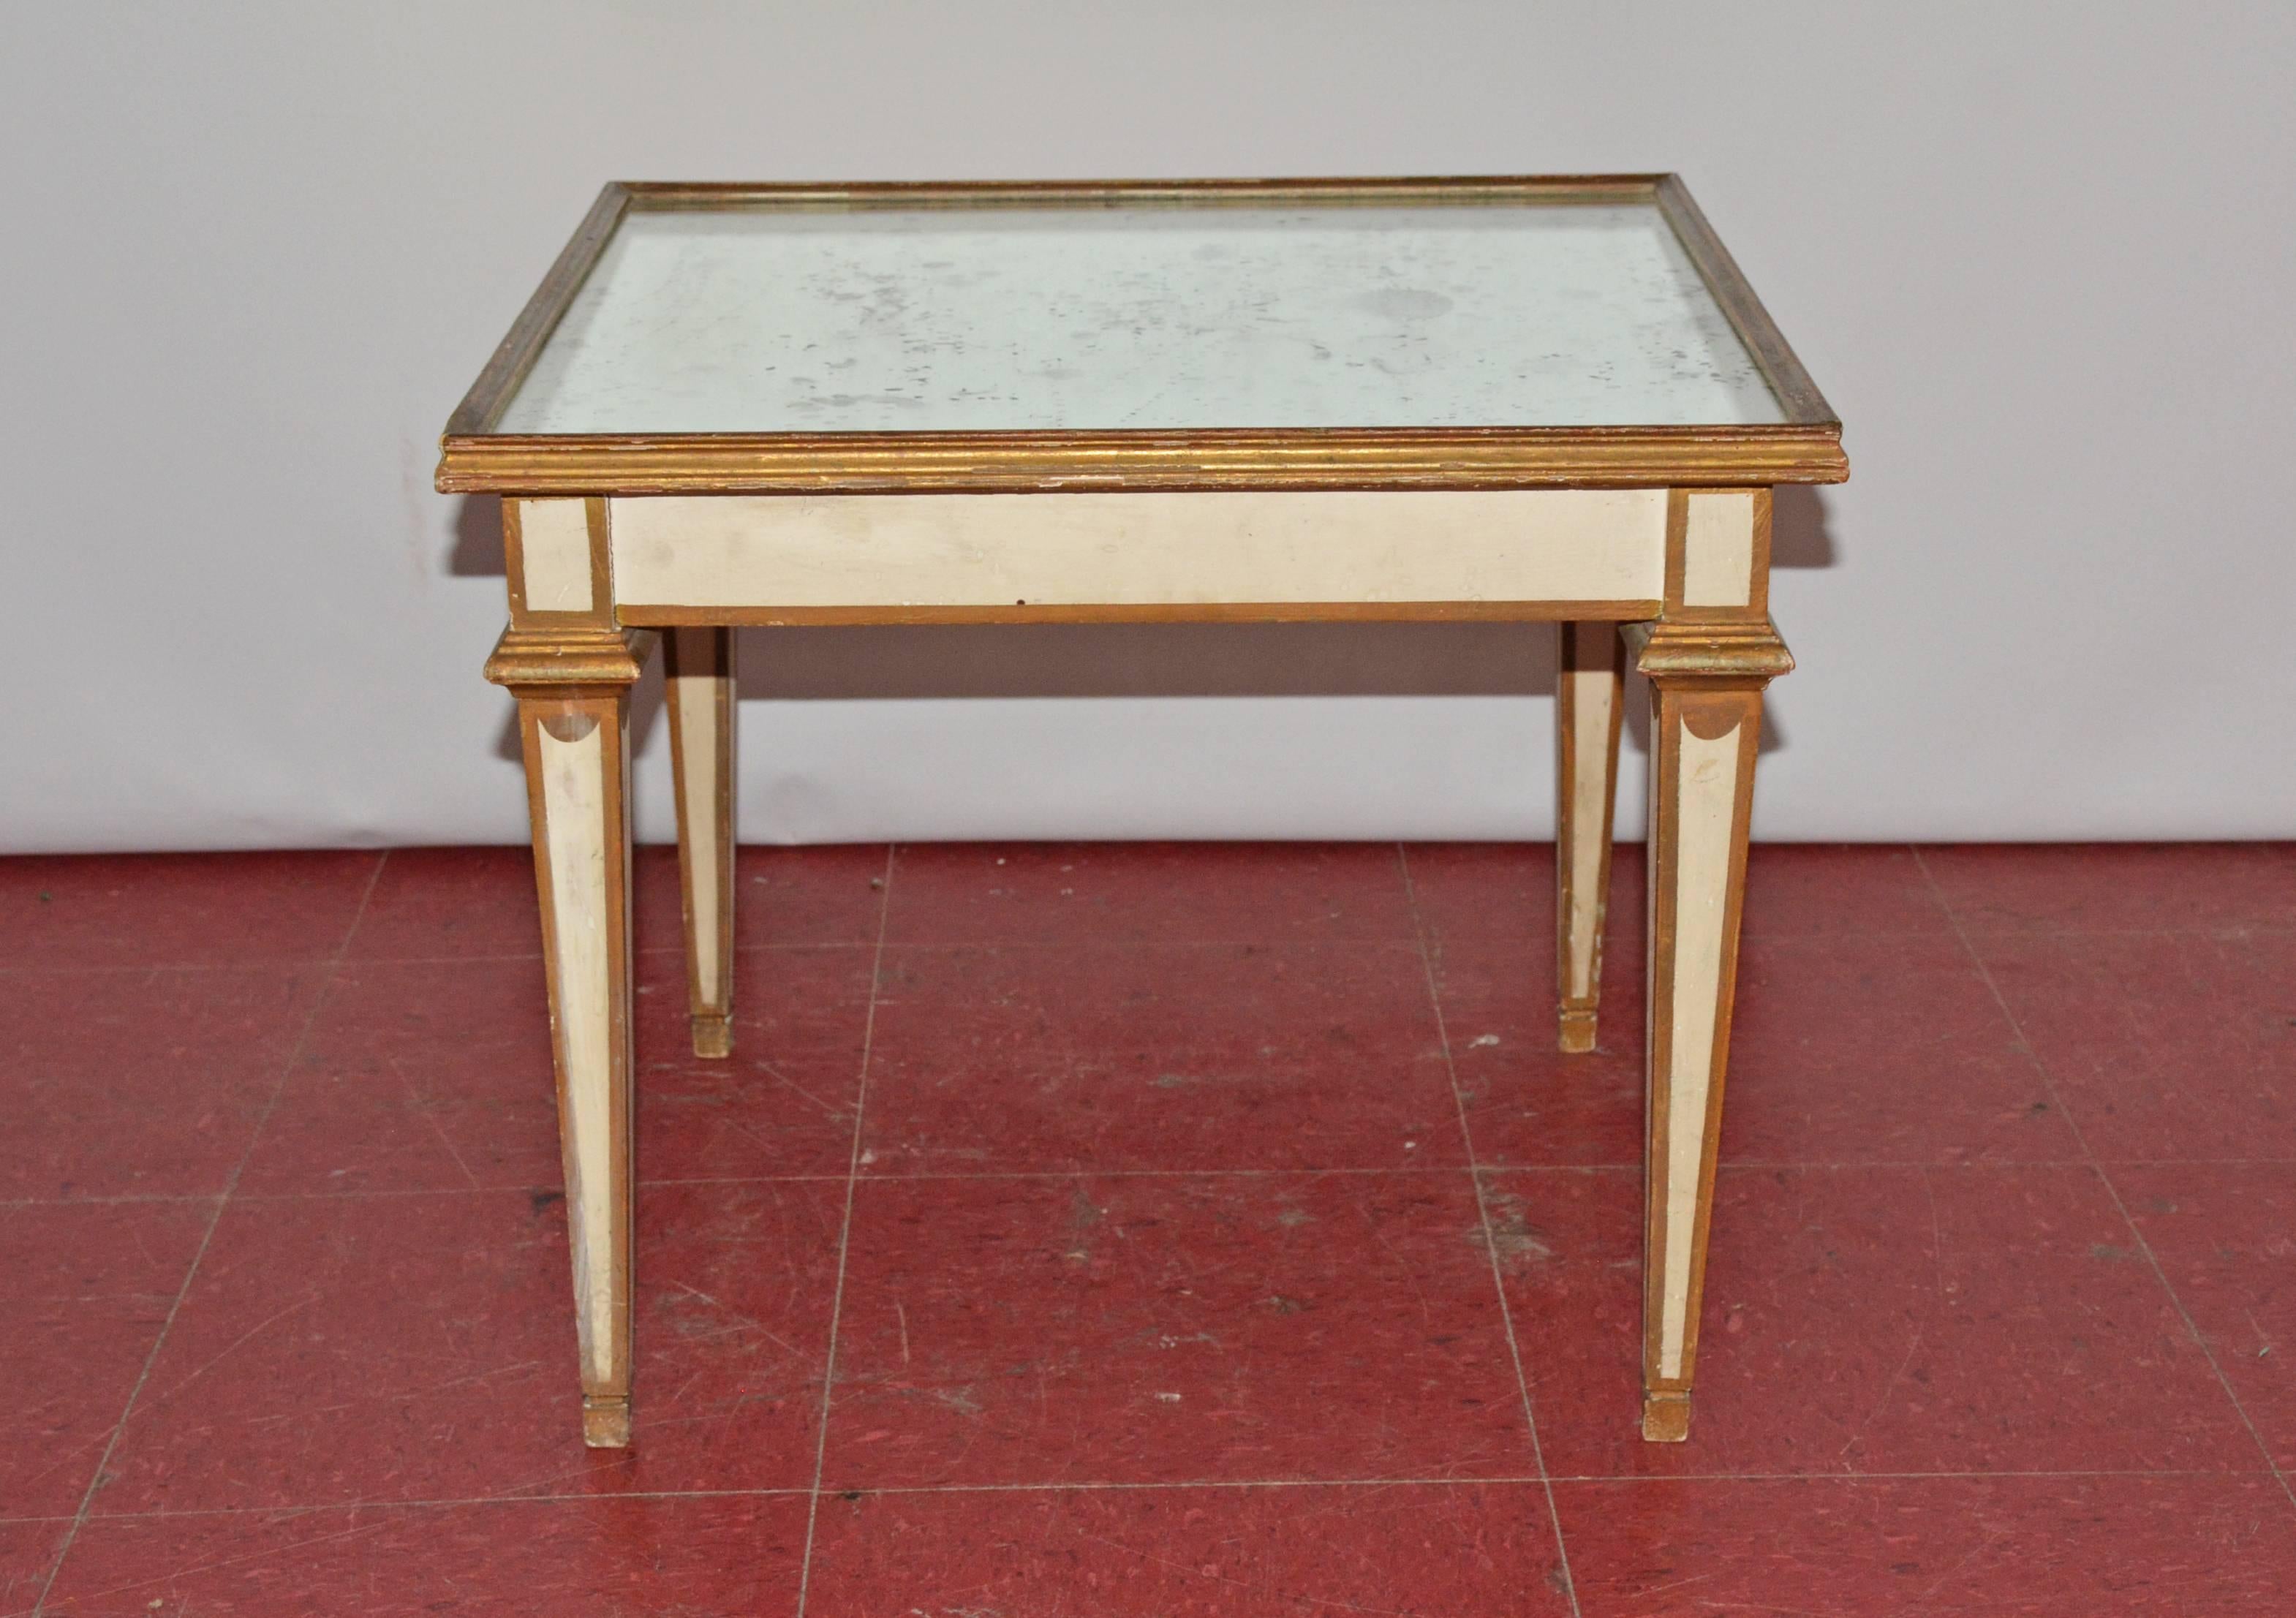 Peinte en blanc avec des garnitures dorées, cette table basse ou d'appoint néoclassique présente un plateau en miroir et des pieds effilés.